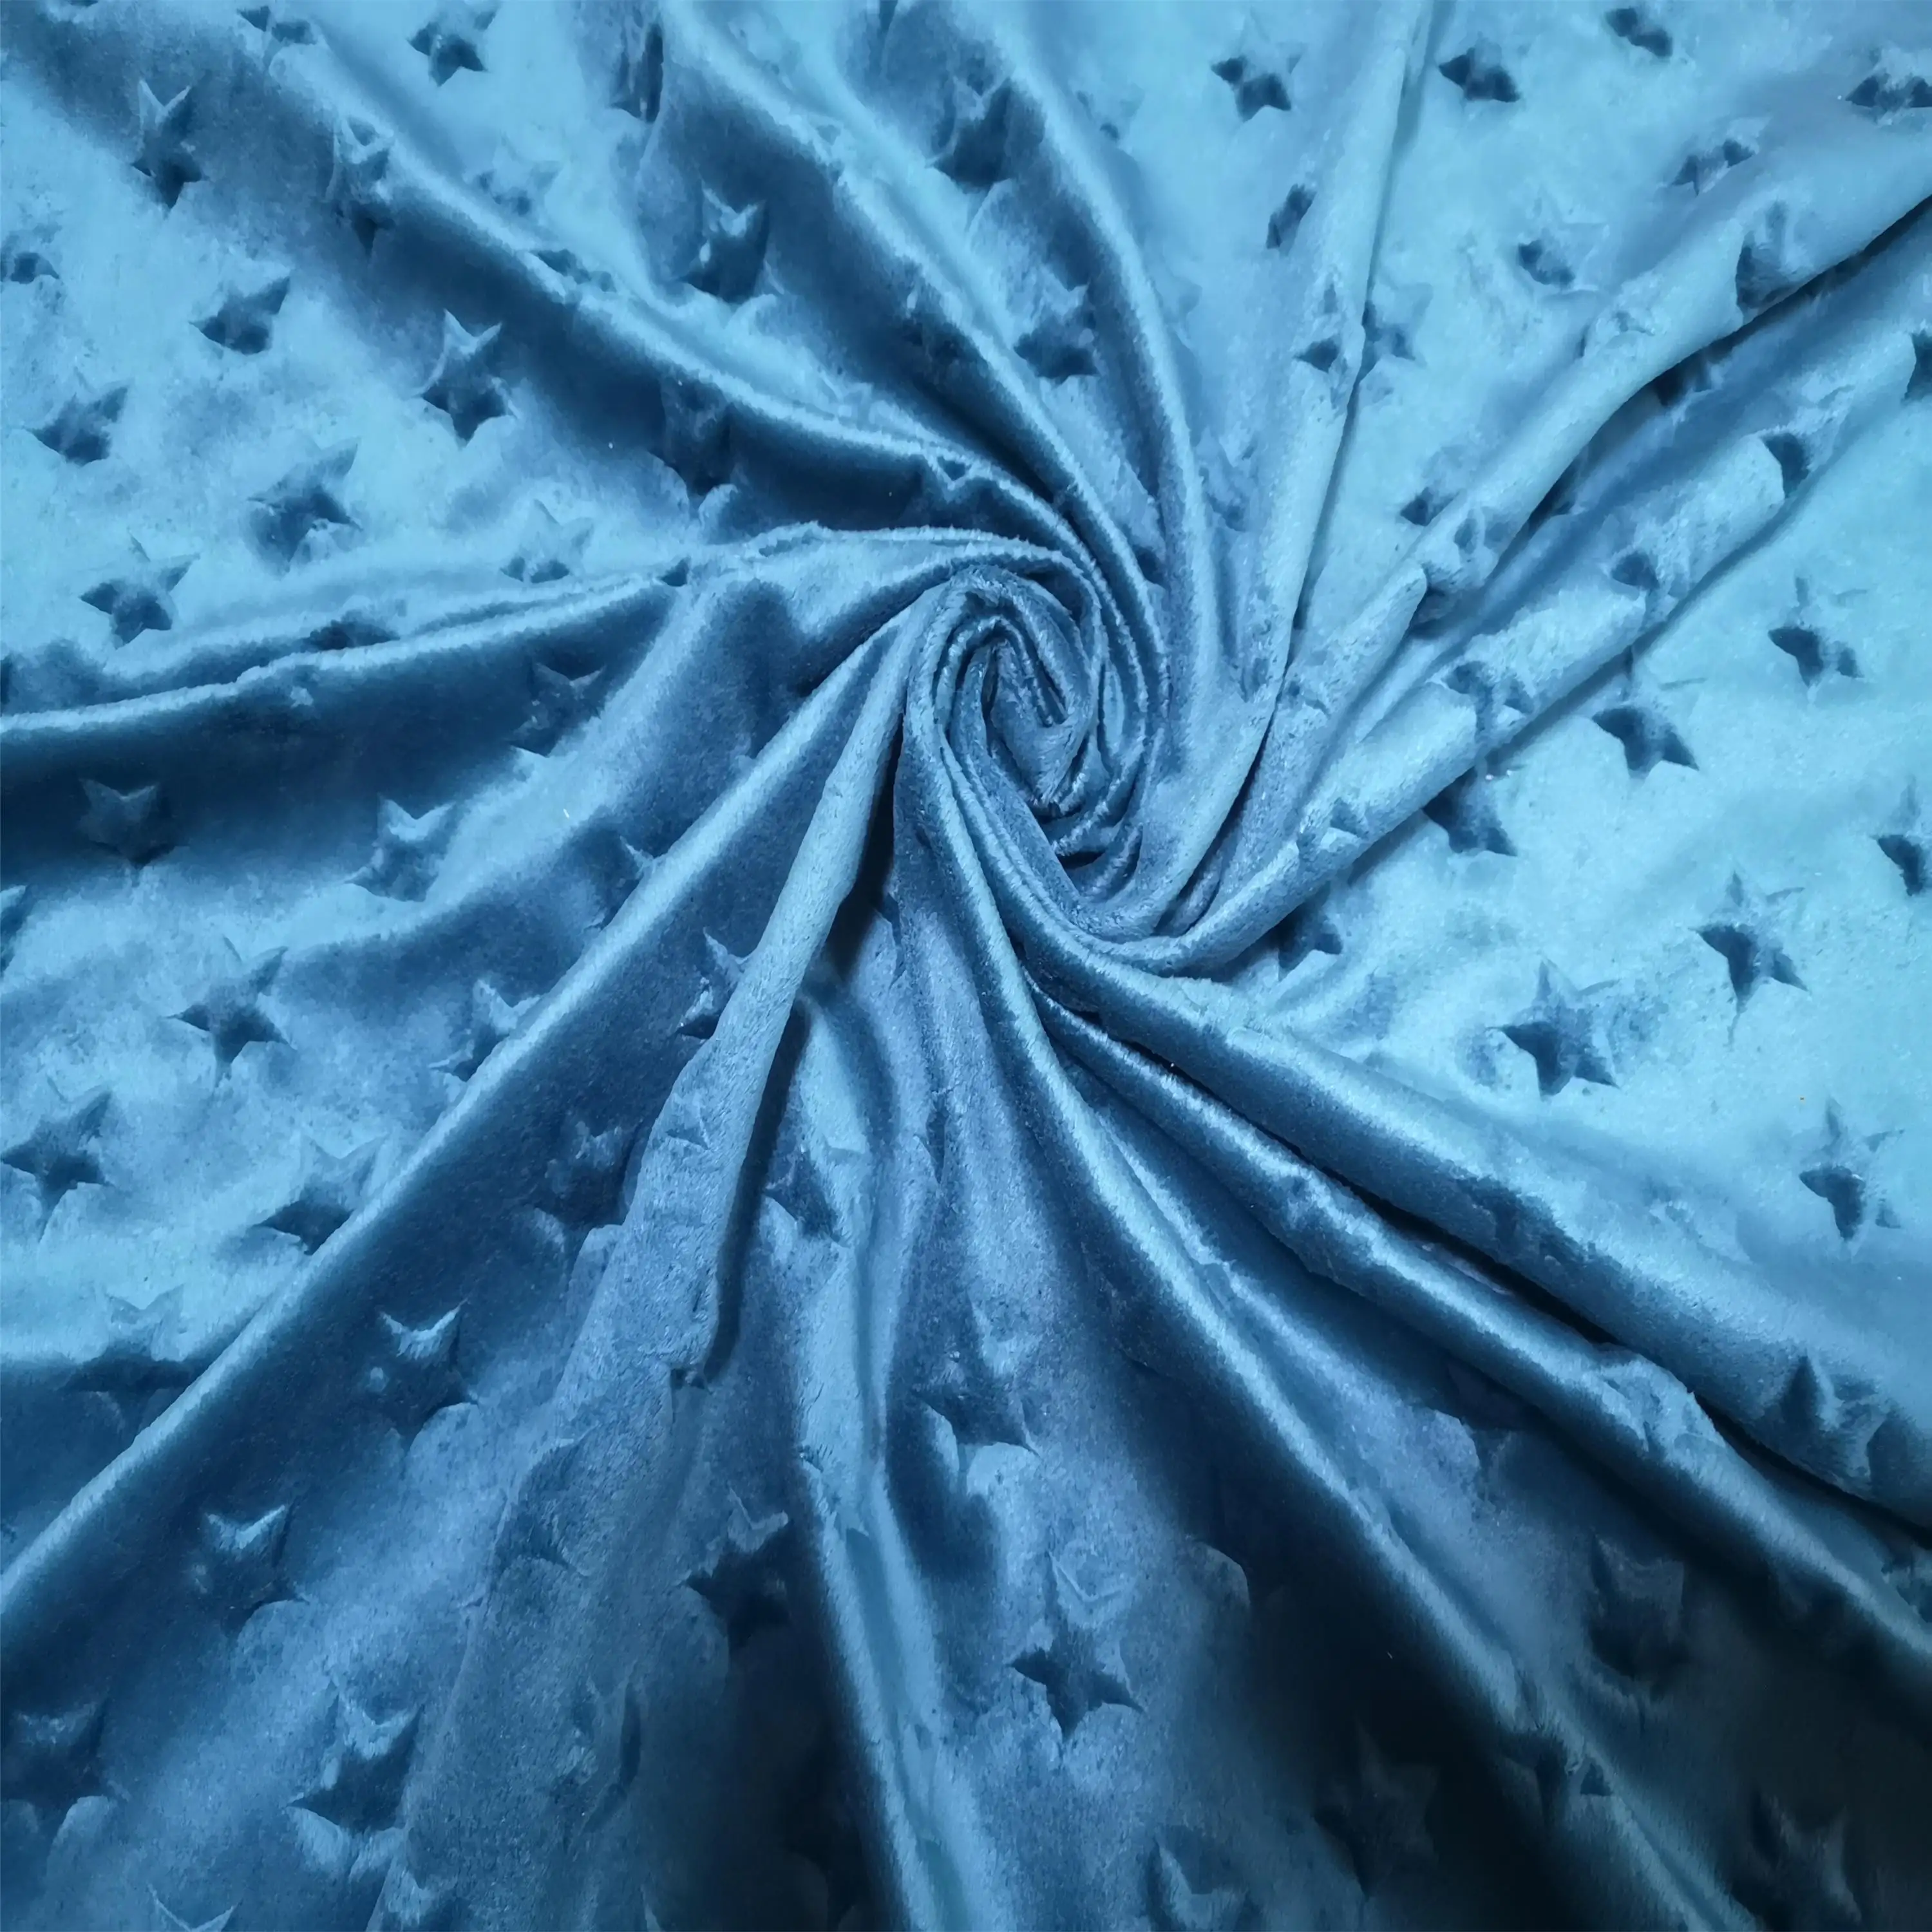 قماش قطيفة تنقش أريكة مخملية مع نقش النجوم